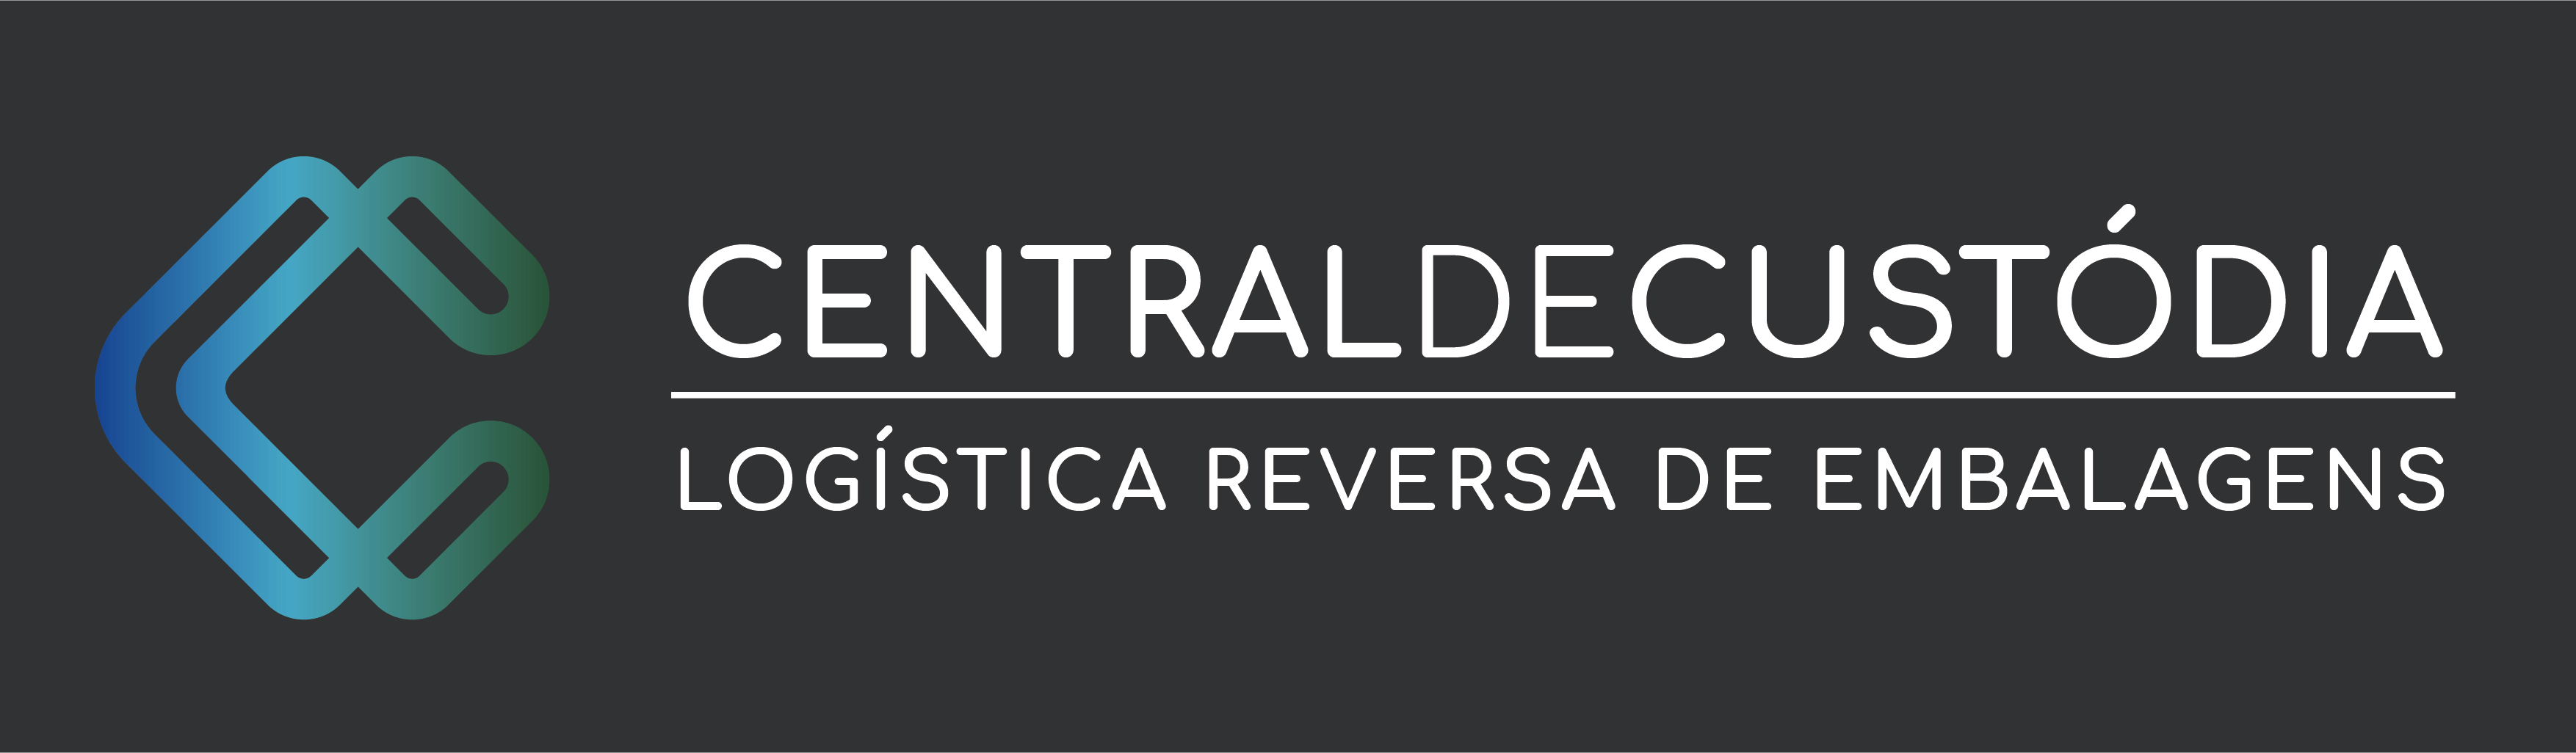 Central de Custodia LTDA (Custody Center)